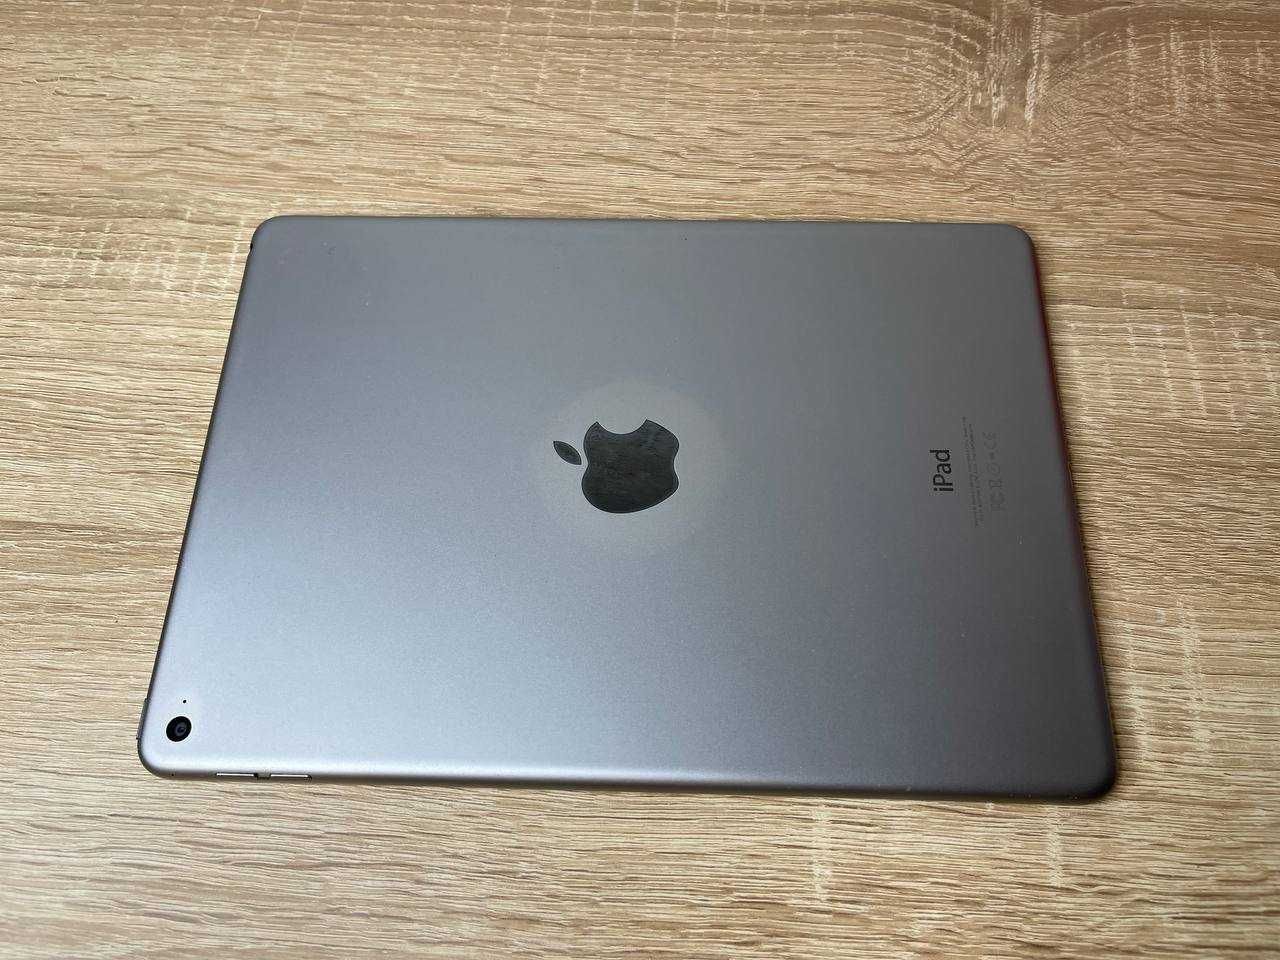 Apple iPad Air 2 64Gb Wi-Fi a1566